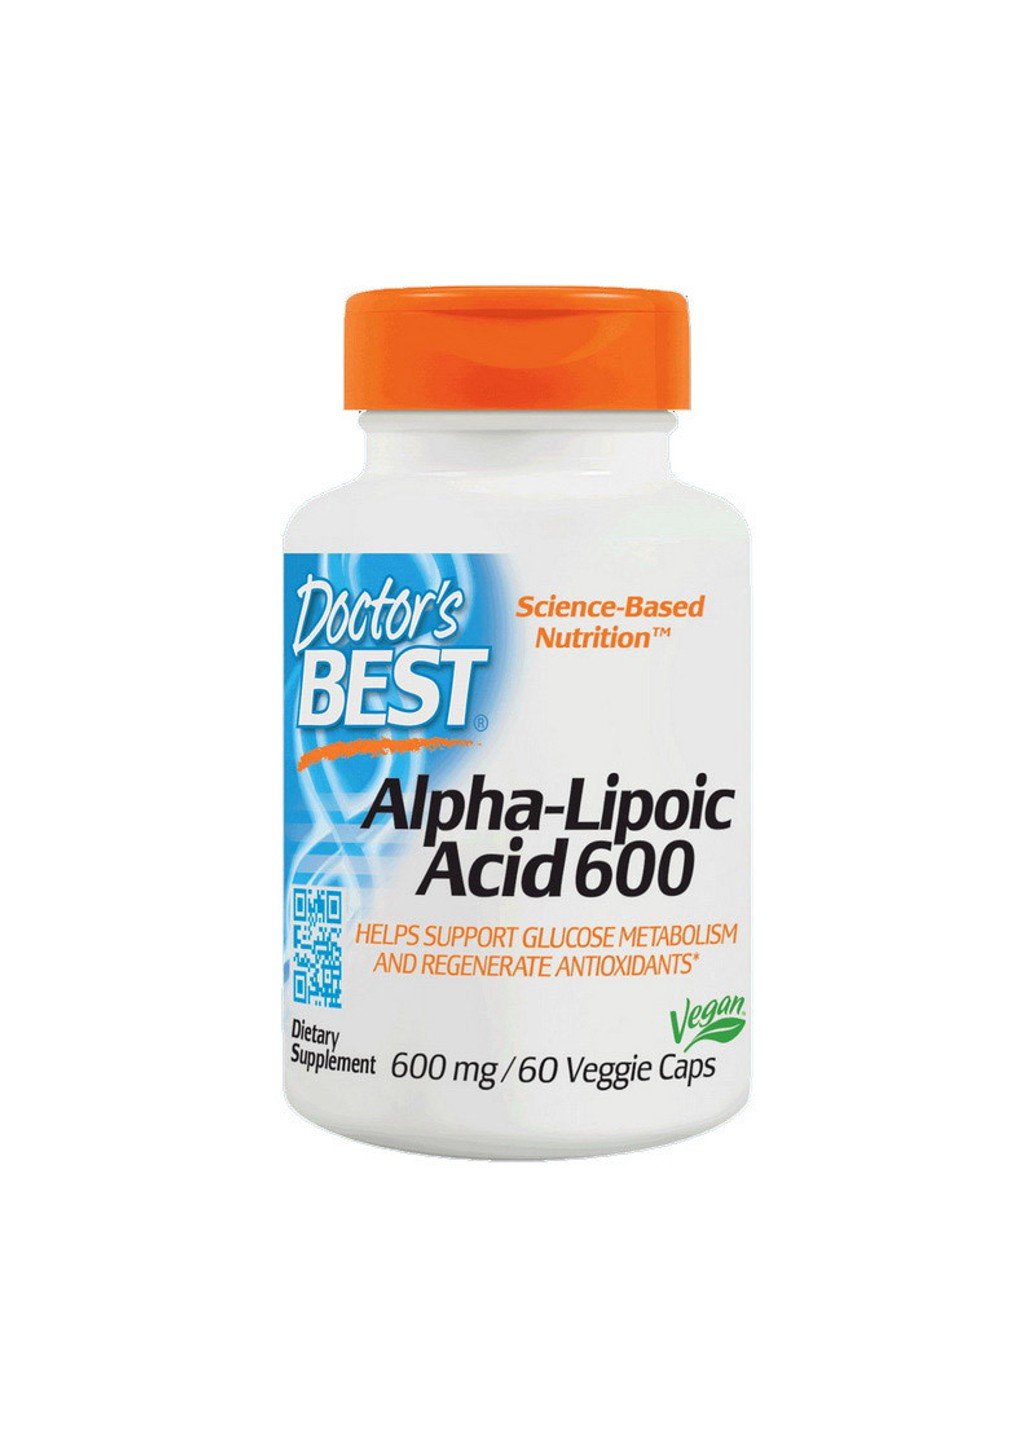 Альфа-липоевая кислота Alpha-Lipoic Acid 600 (60 капс) доктор бест Doctor's Best (255409081)